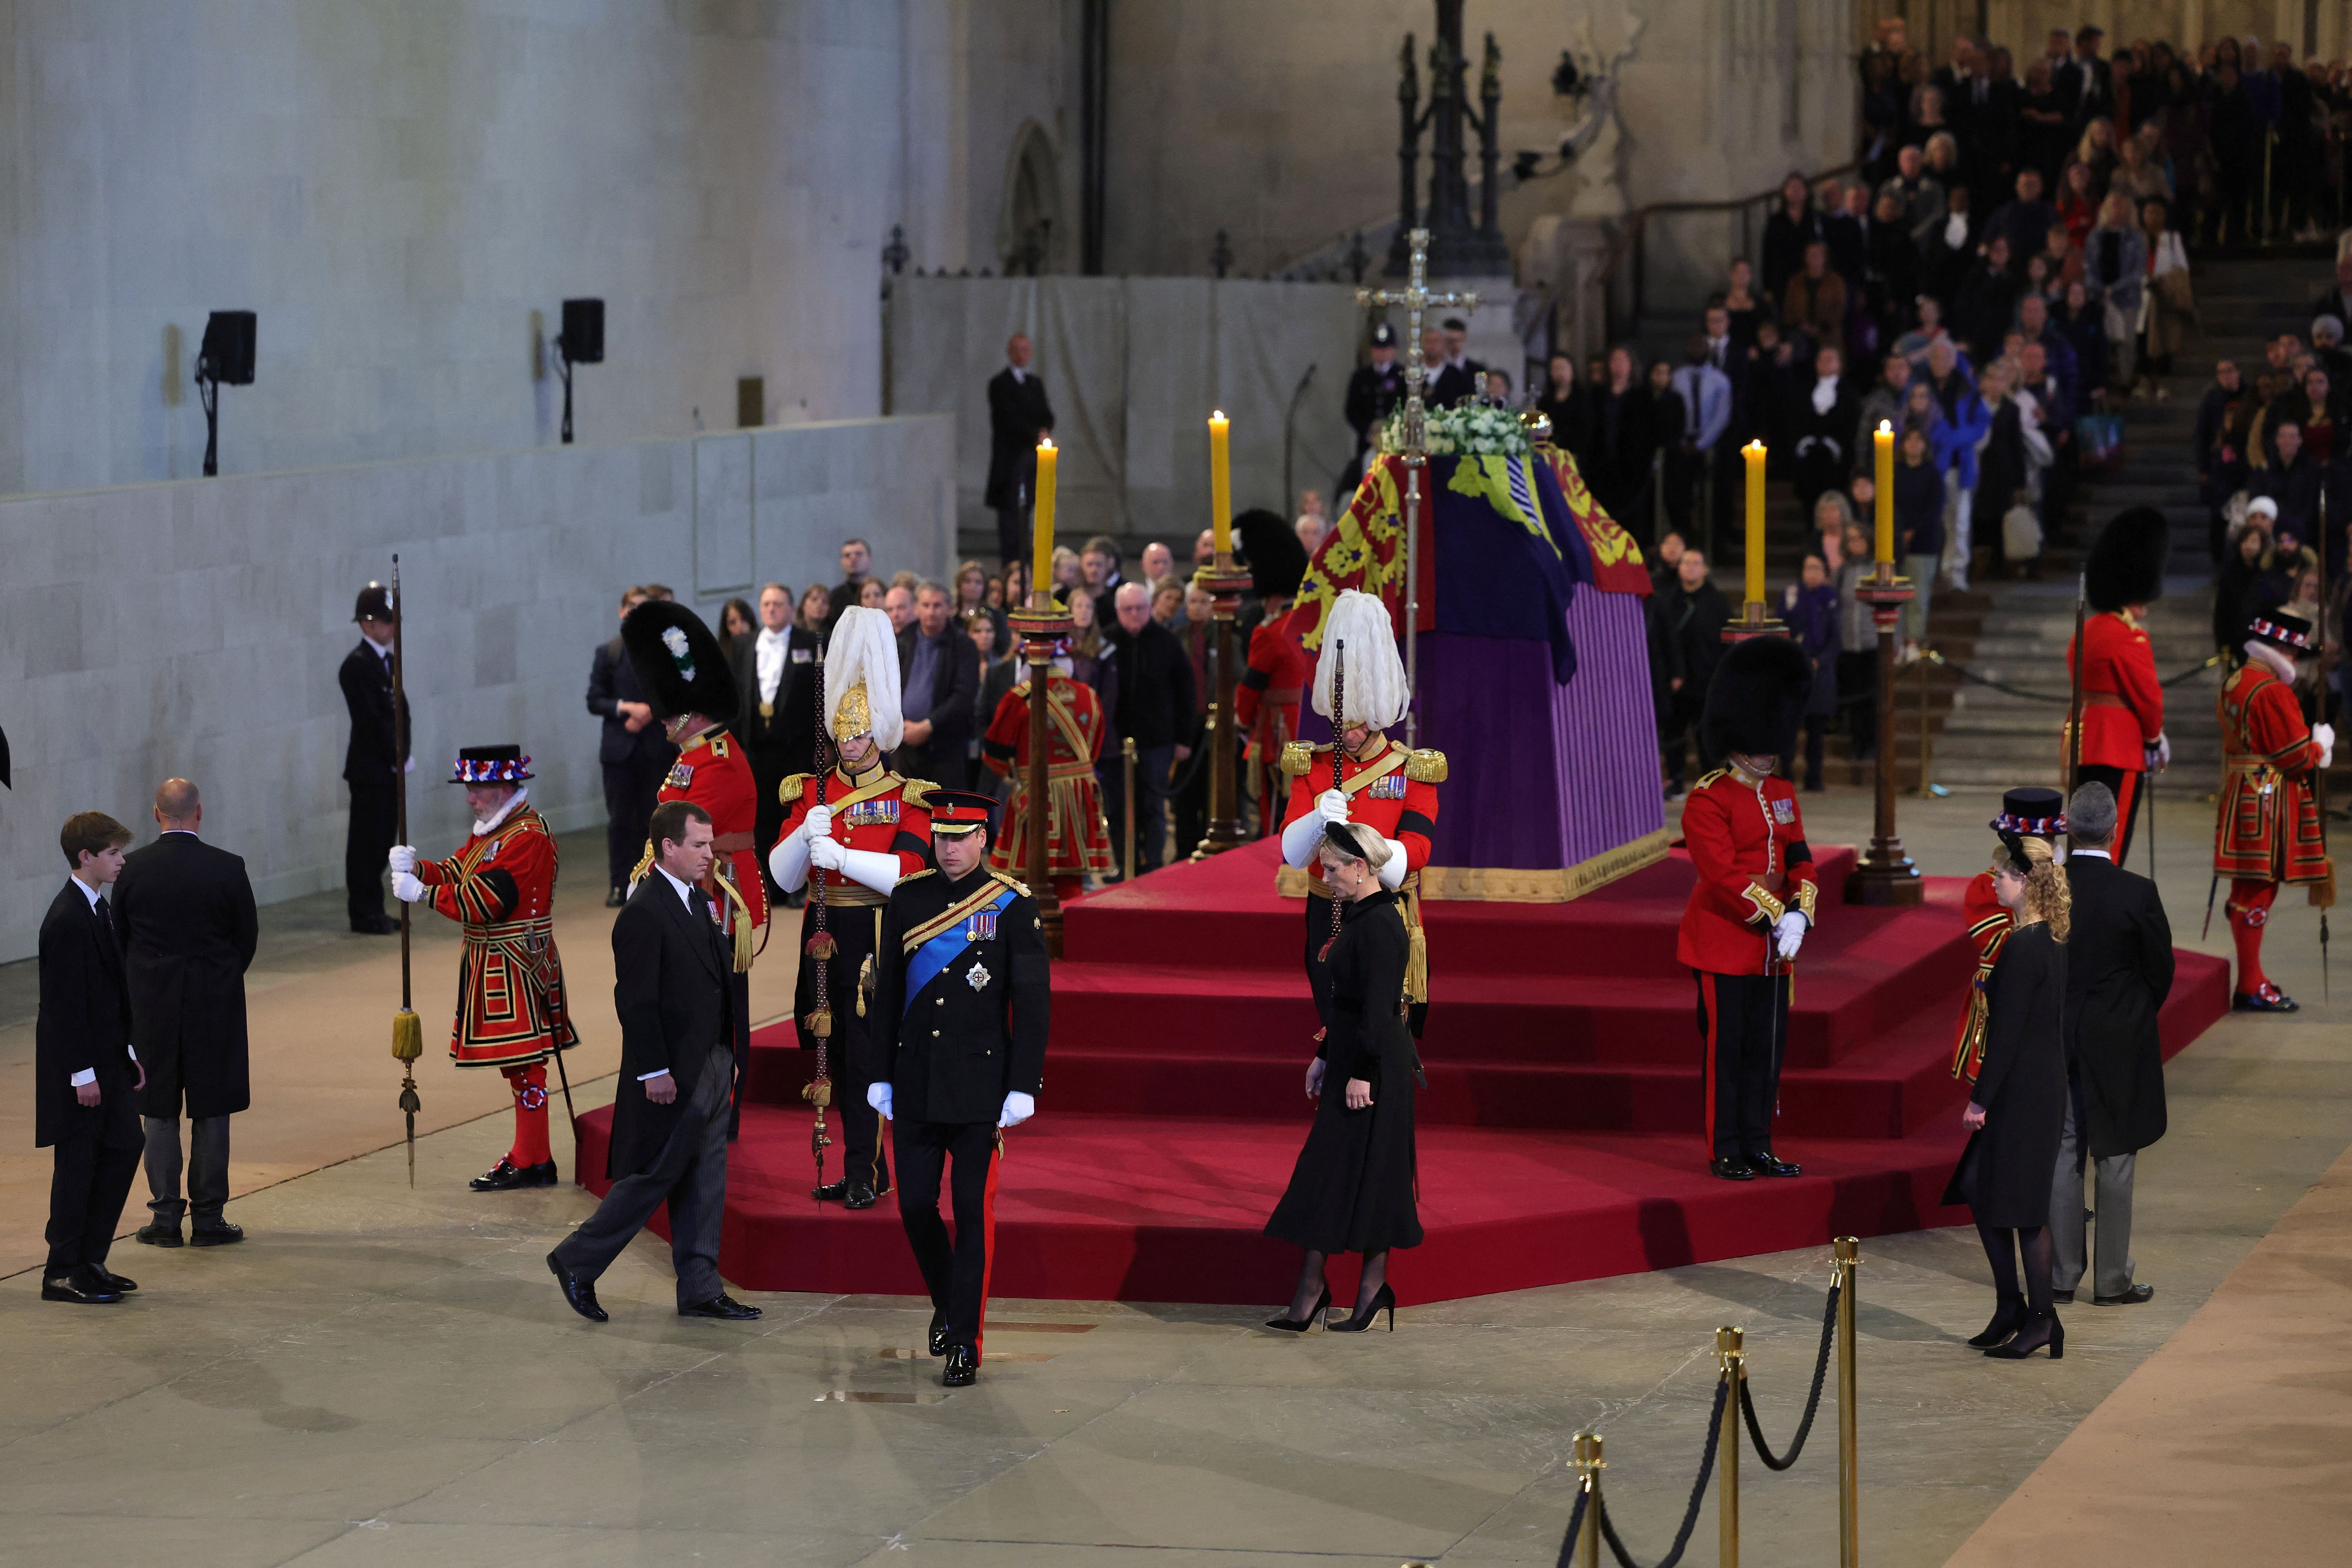 El príncipe William, príncipe de Gales, Peter Phillips, James, vizconde de Severn, Zara Tindall y Lady Louise Windsor celebran una vigilia en honor de la reina Isabel II en Westminster Hall el 17 de septiembre de 2022 en Londres, Inglaterra. (REUTERS)